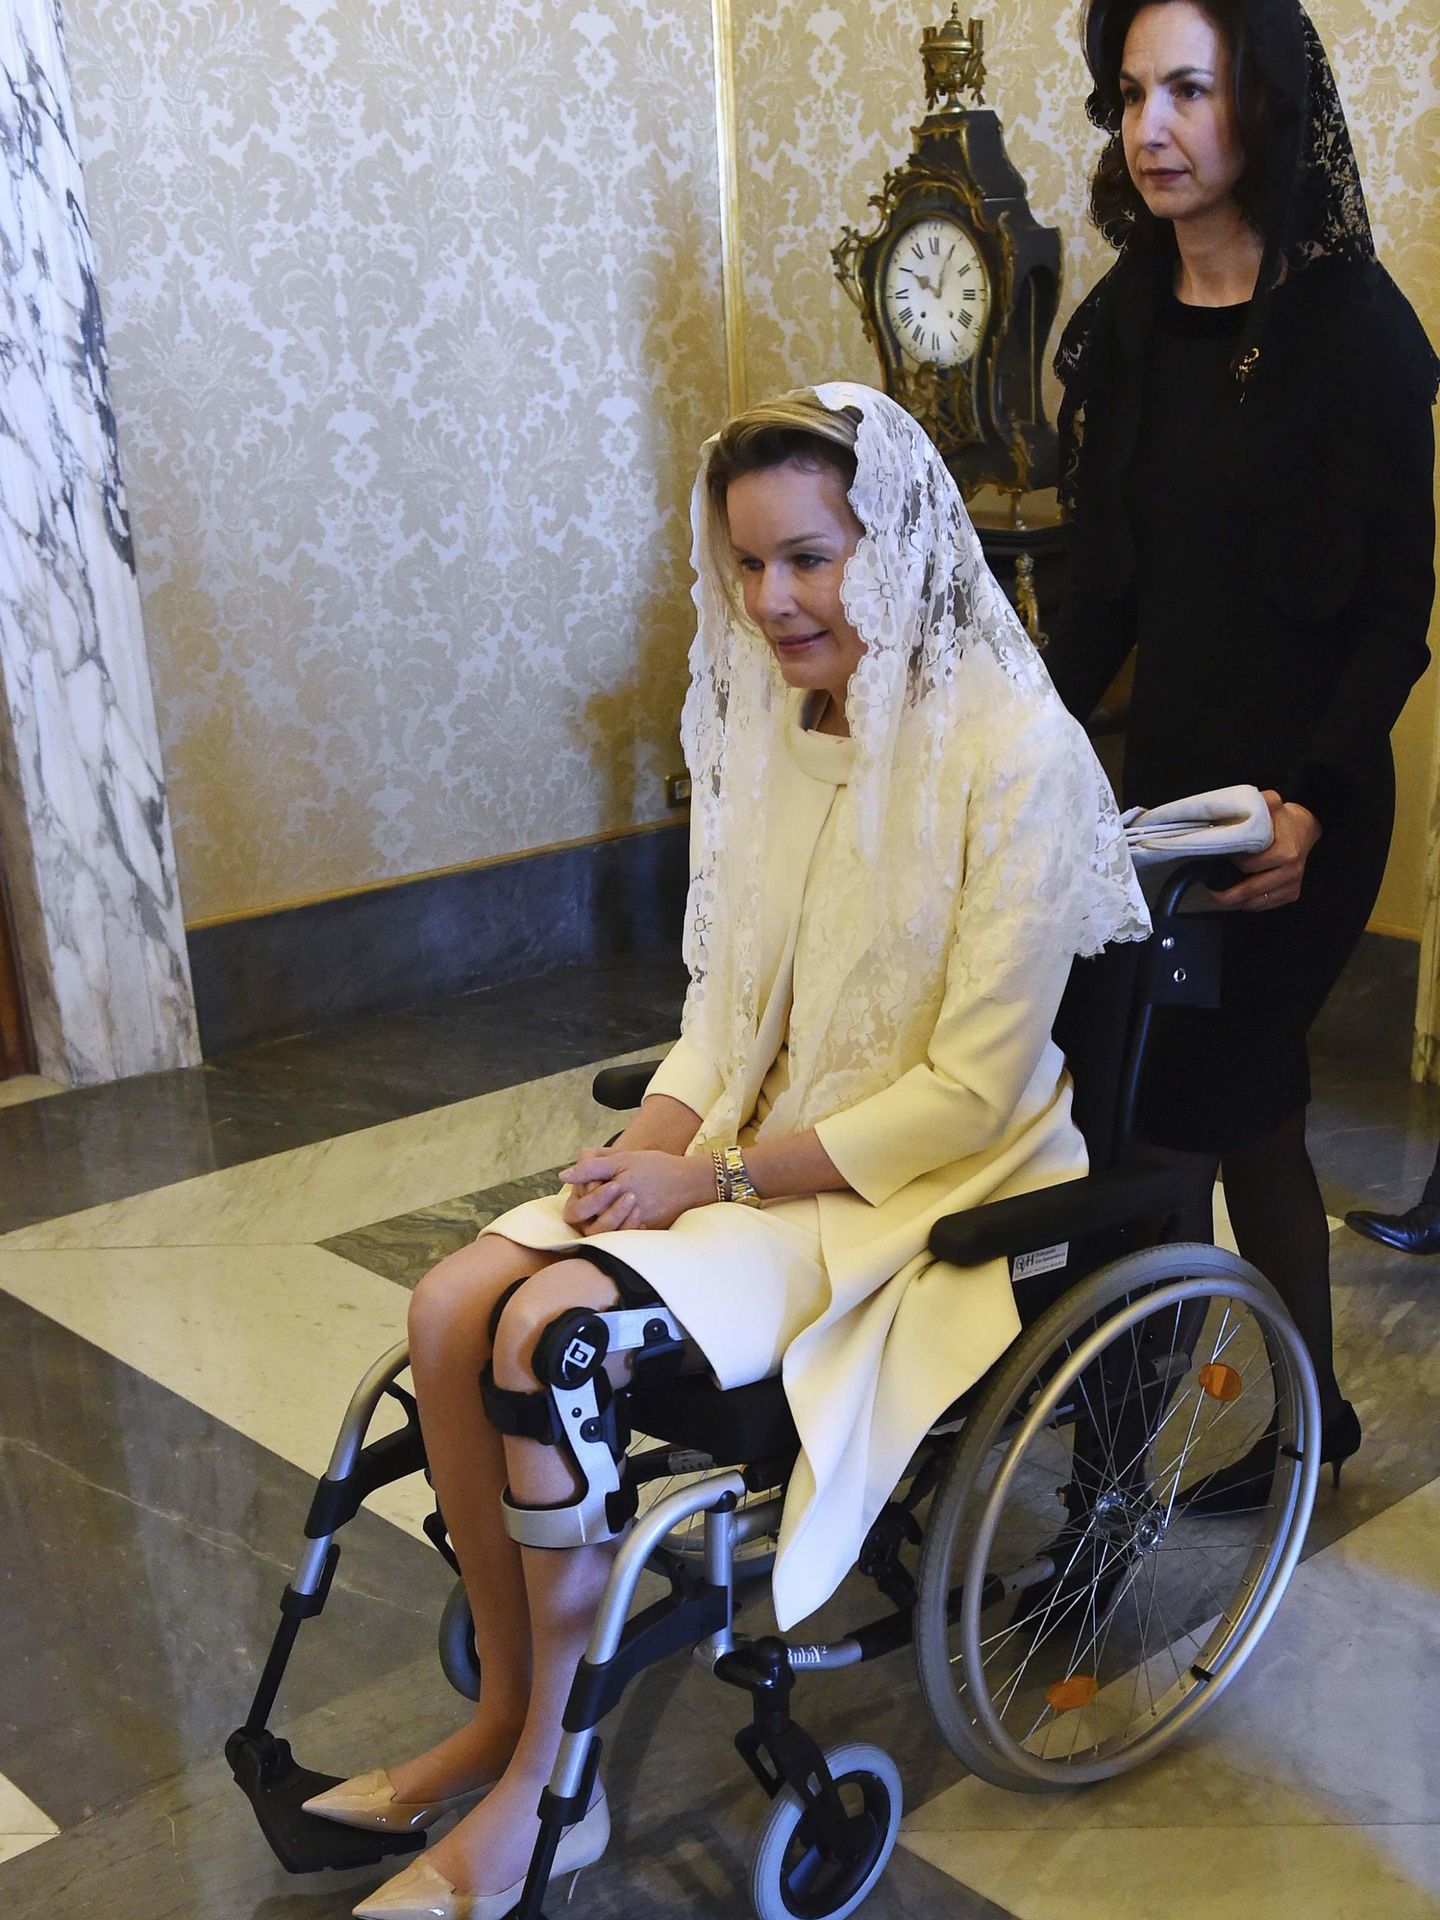 La visita de la reina Matilde al Vaticano en 2015. (Reuters)